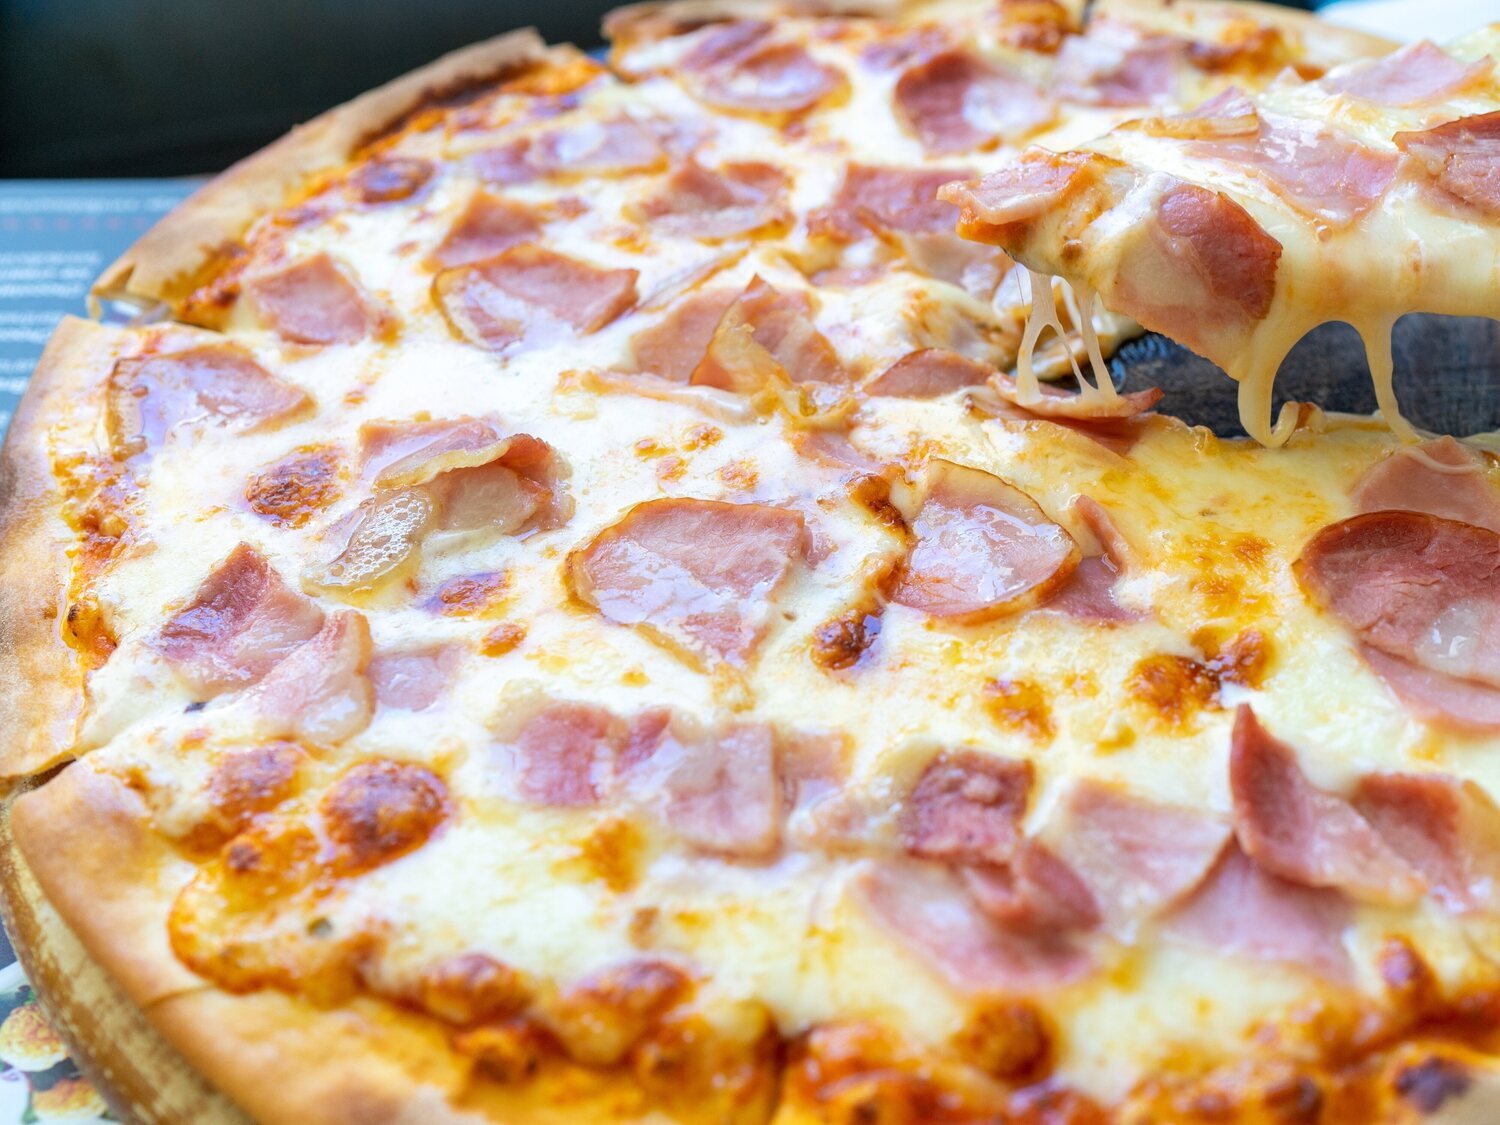 Alerta alimentaria: retiran de la venta estas pizzas de Buitoni en Francia tras la muerte de dos niños